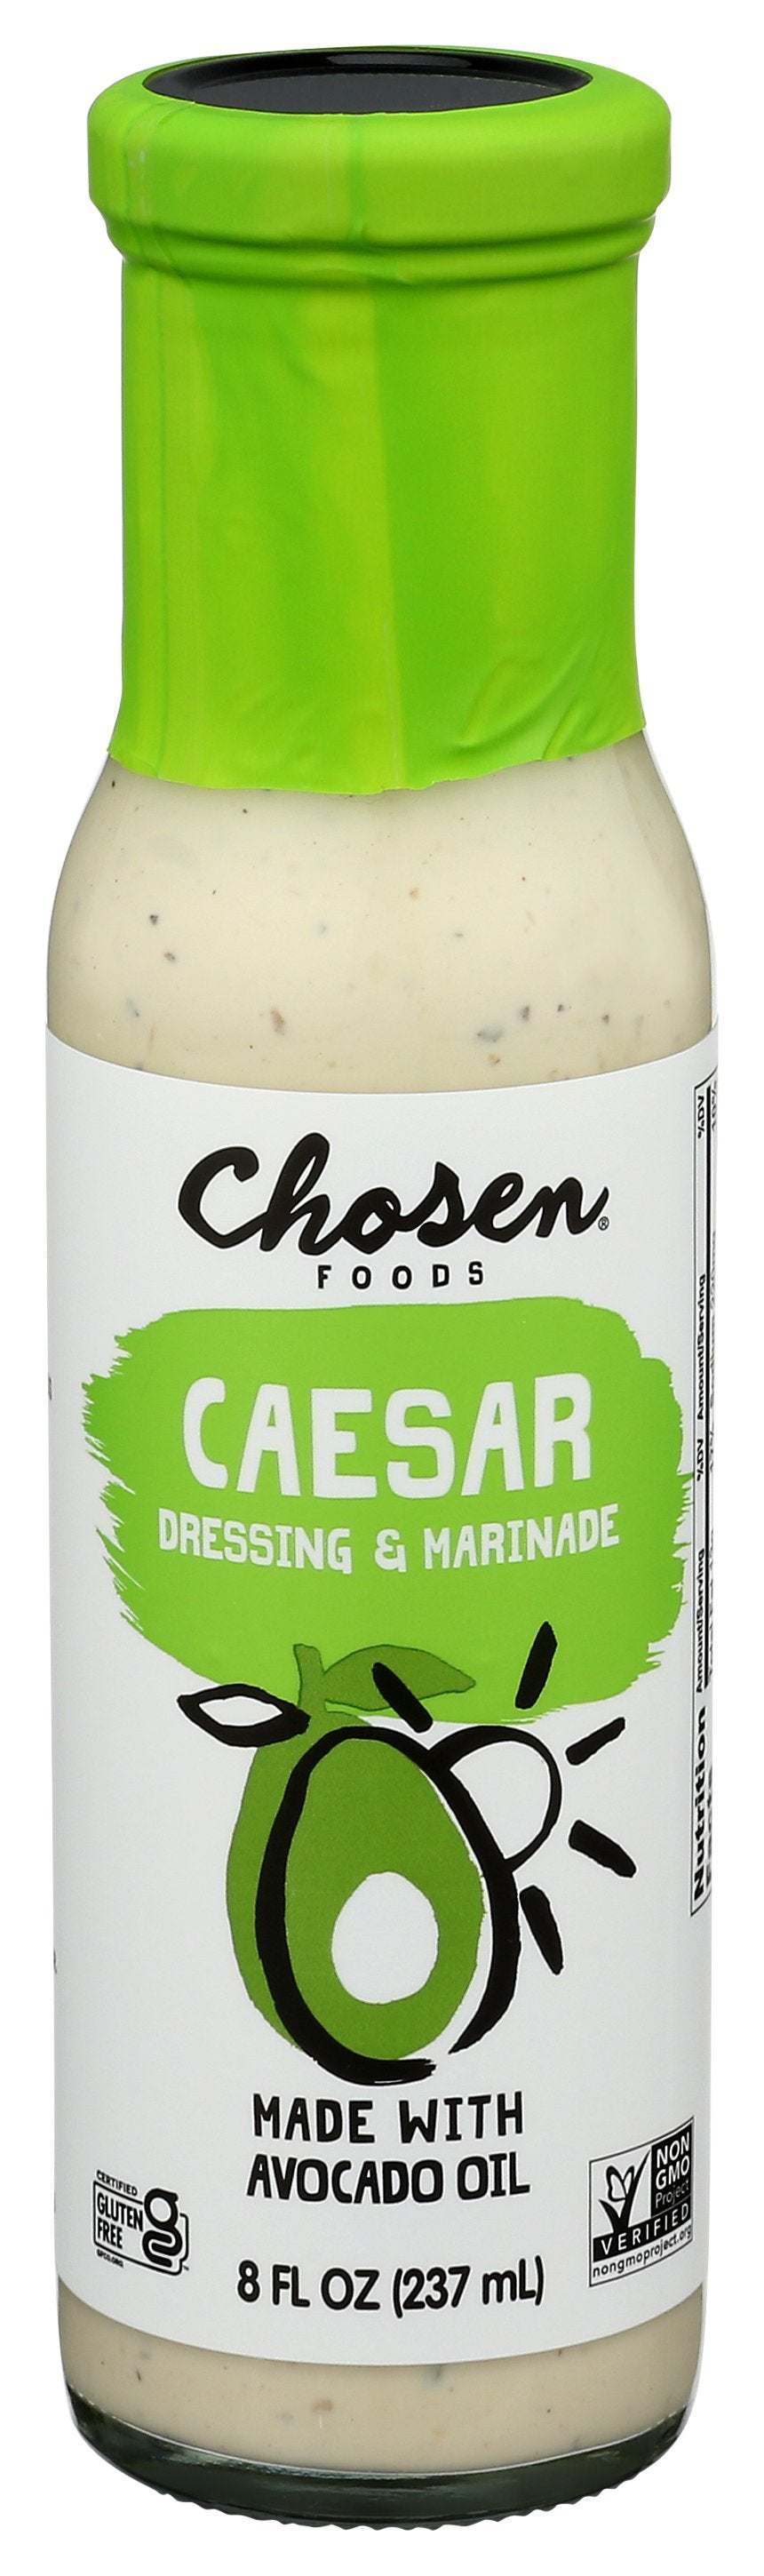 CHOSEN FOODS DRESSING CAESAR & MARNADE - Case of 6